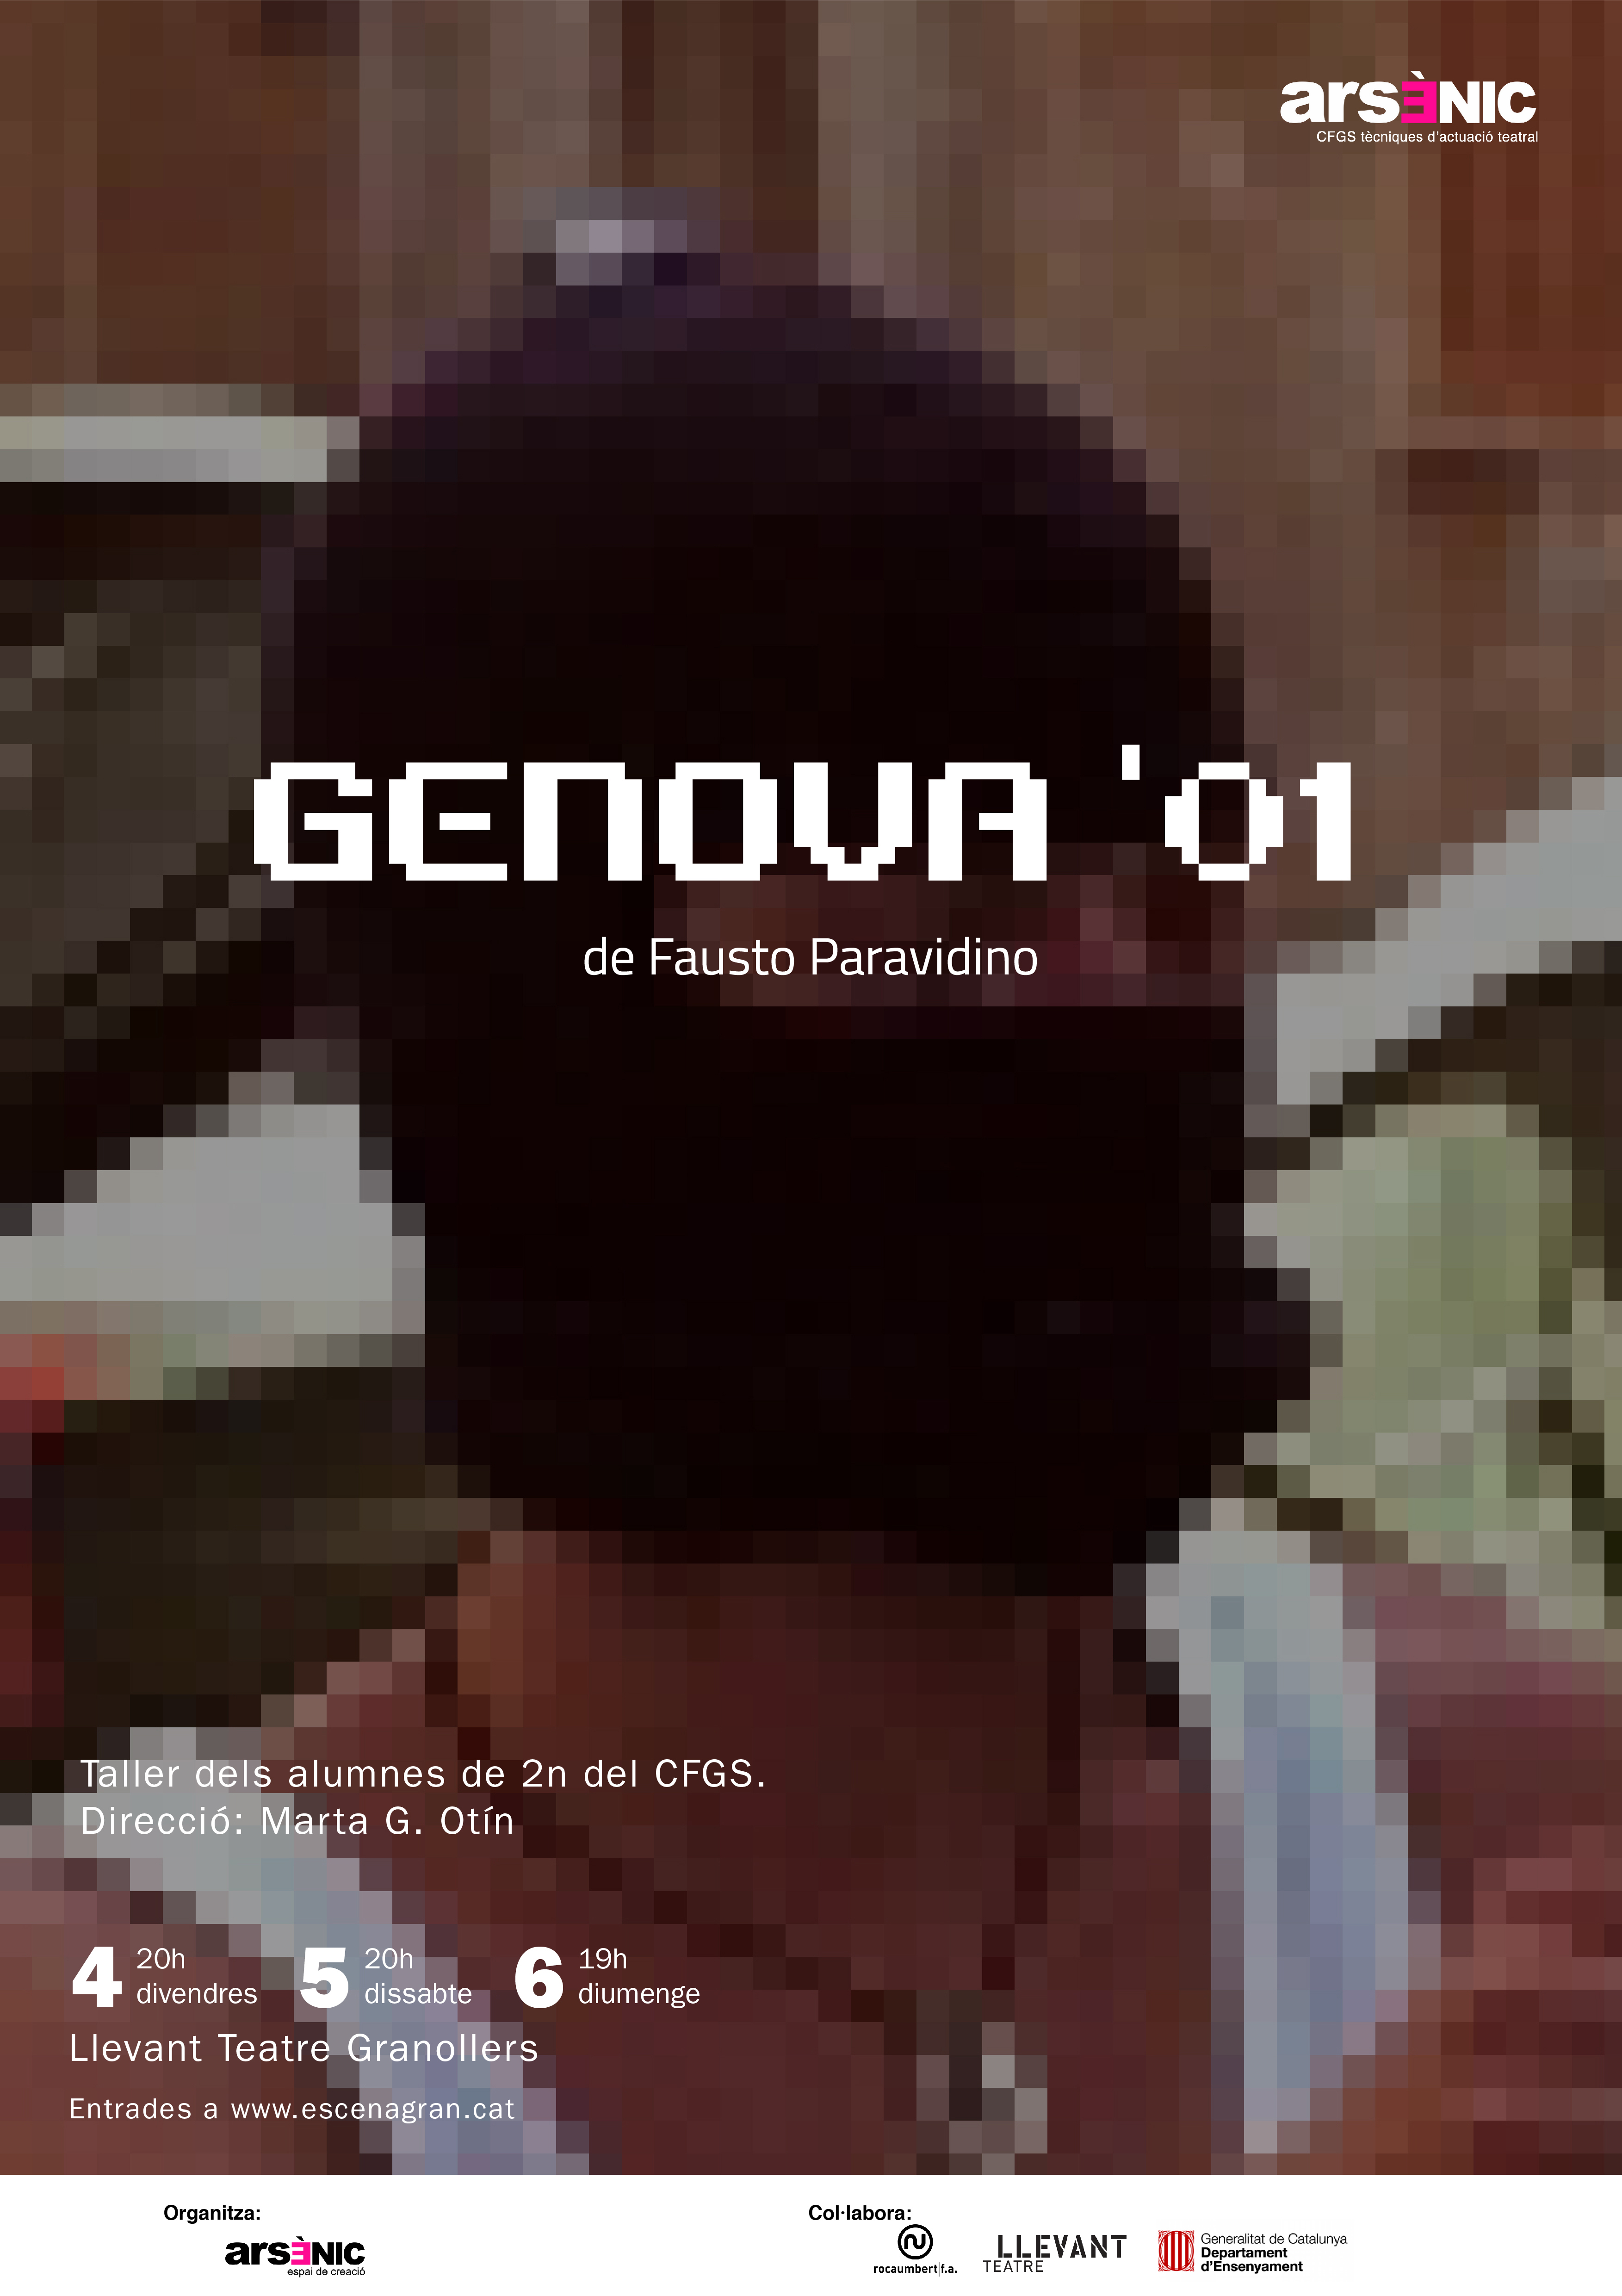 'Gènova'01', el nou espectacle dels alumnes d'Arsènic que s'estrenarà a Llevant Teatre Granollers